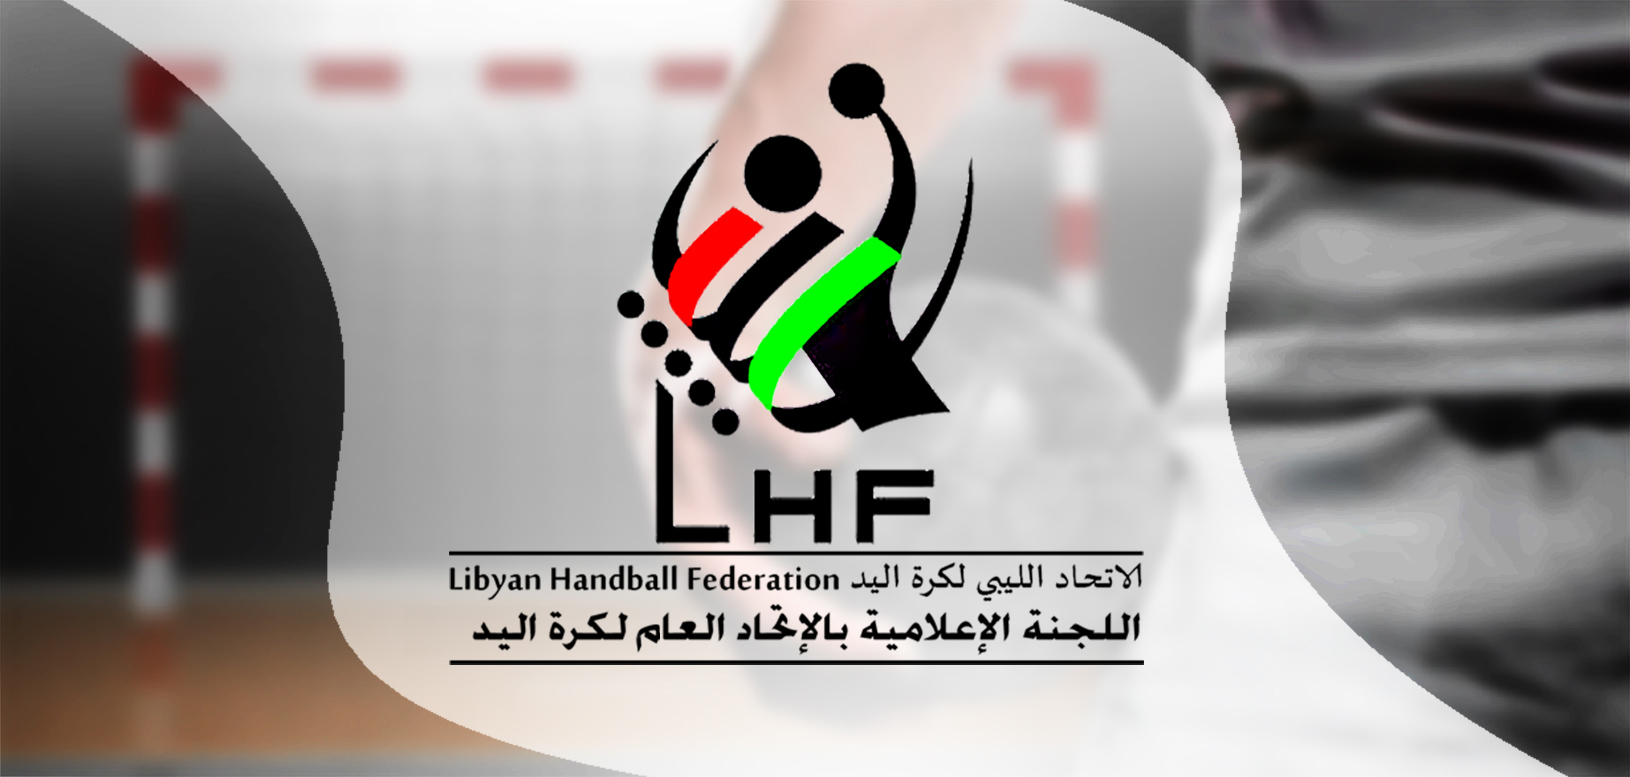 تحديد موعد إقامة نهائيات كأس ليبيا لكرة اليد.